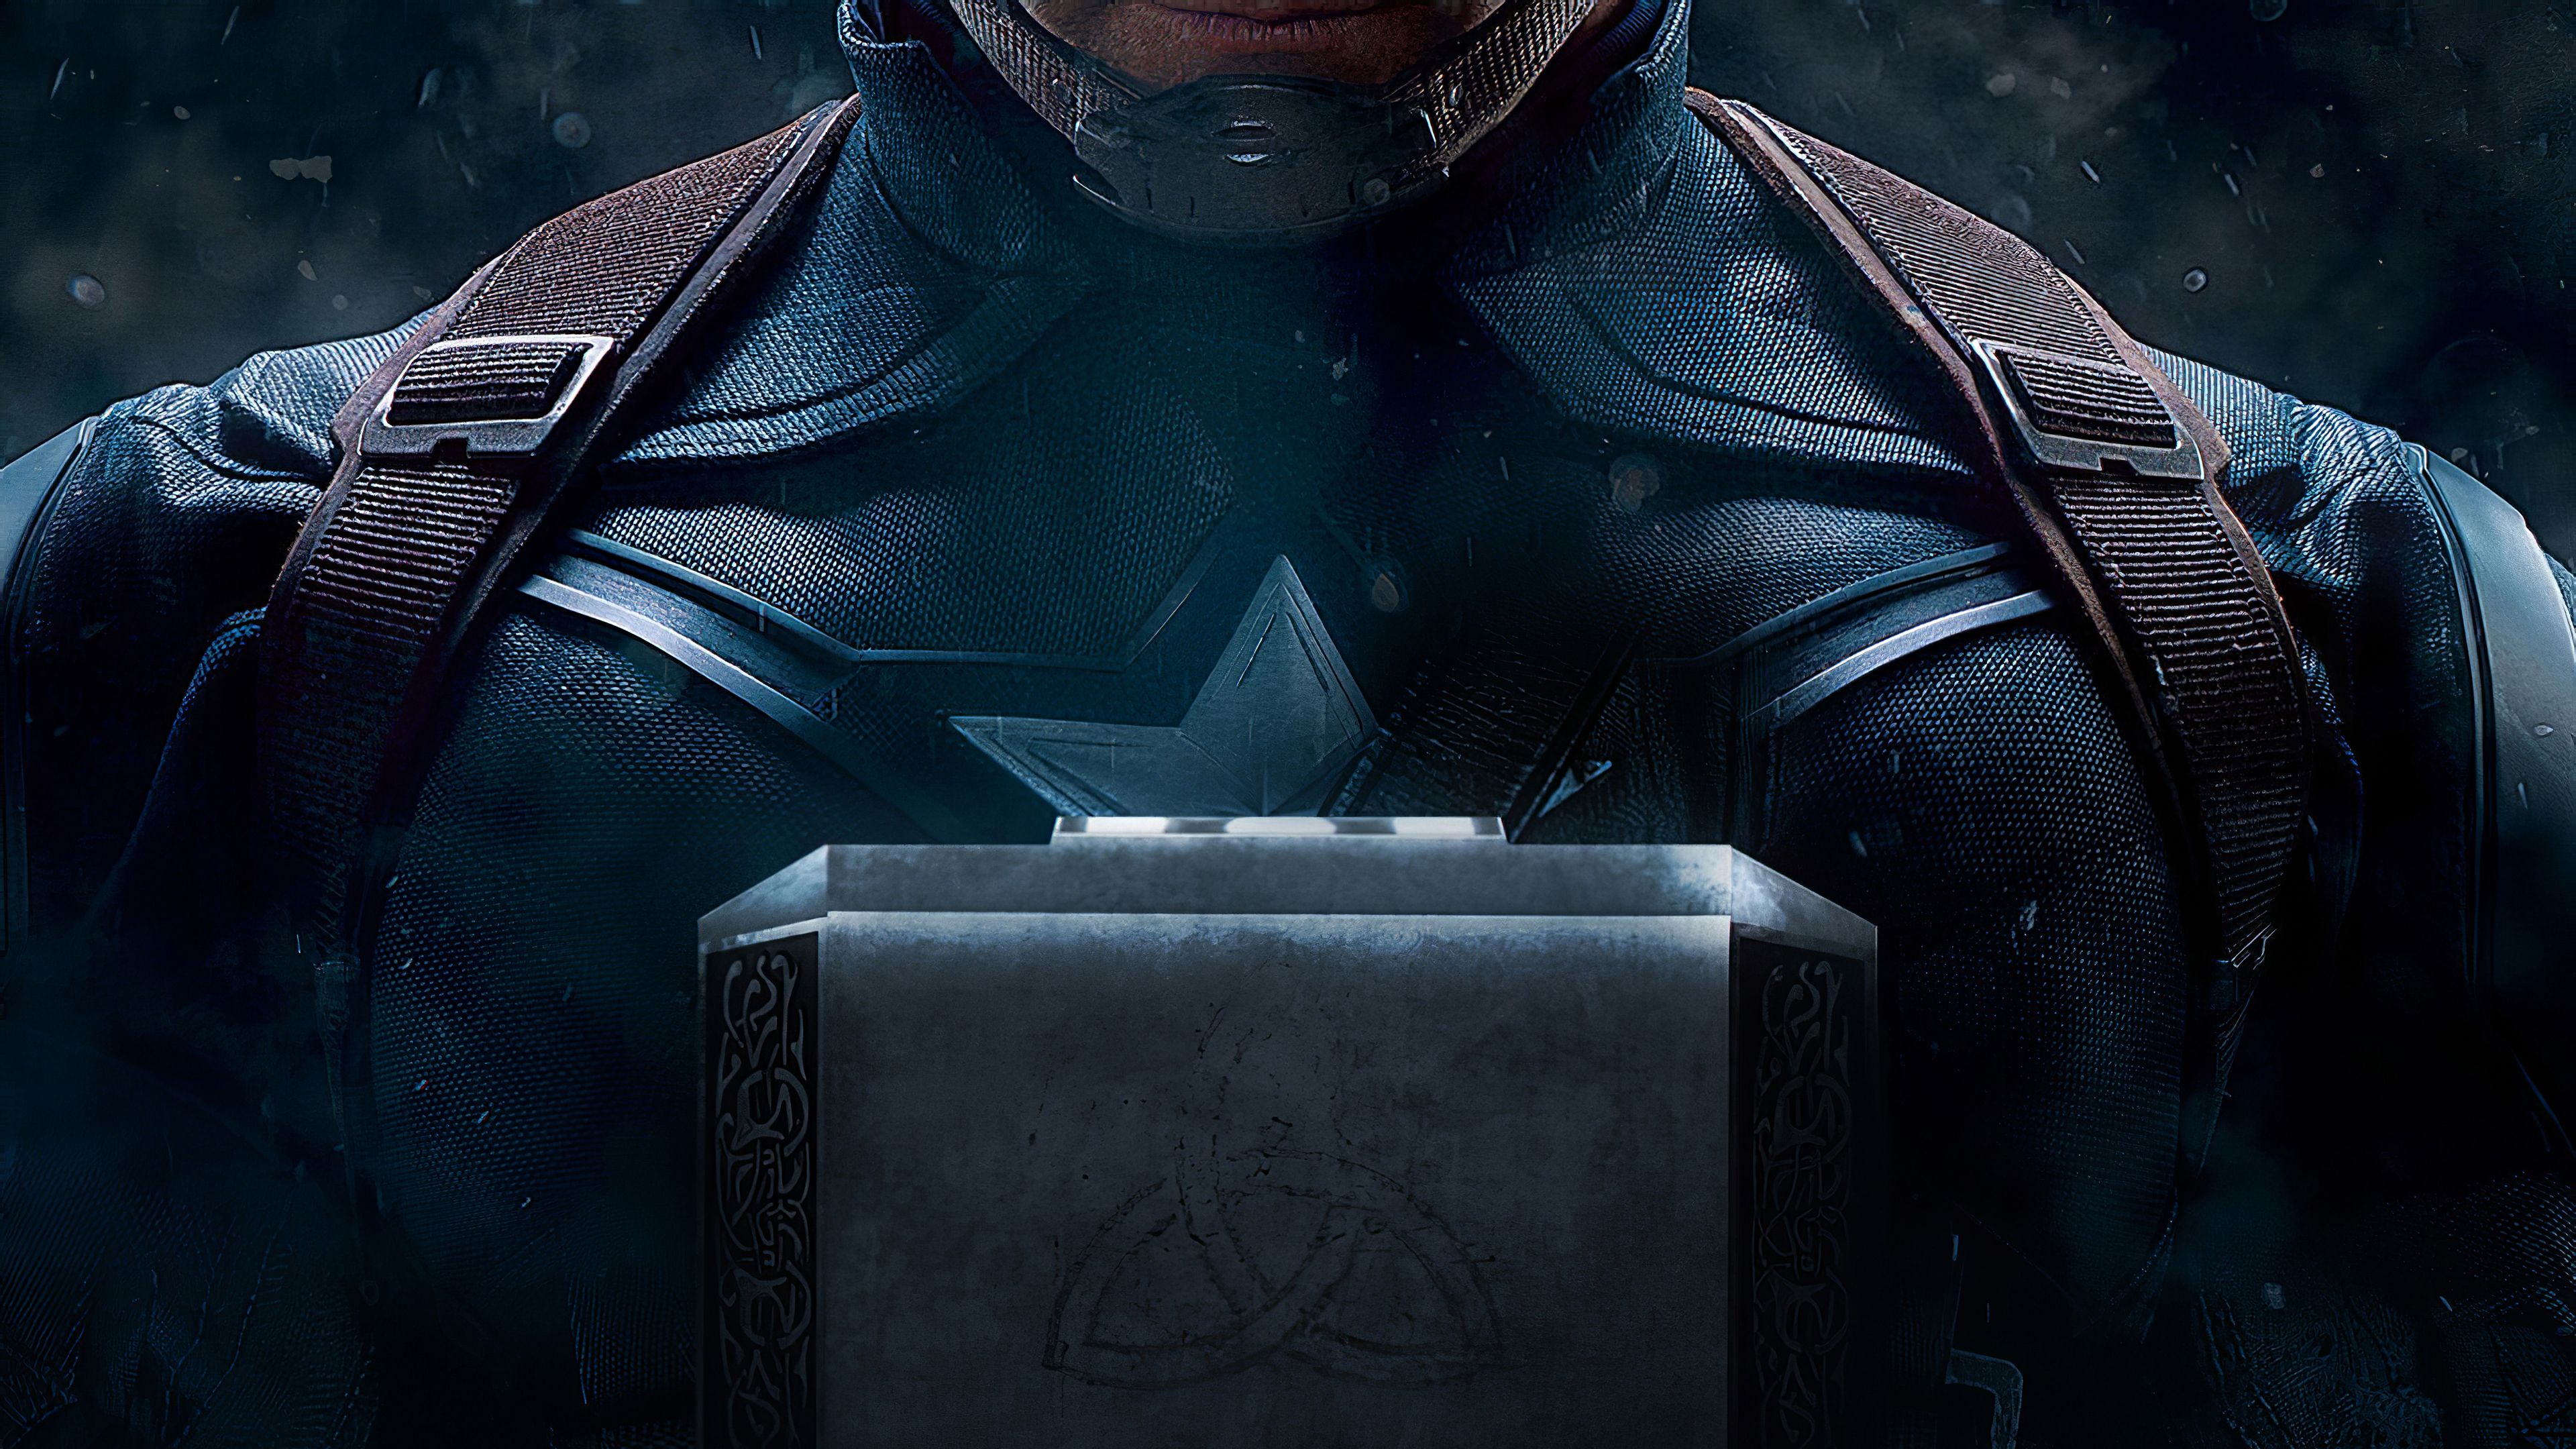 Avengers 4K Wallpaper (53+ images)